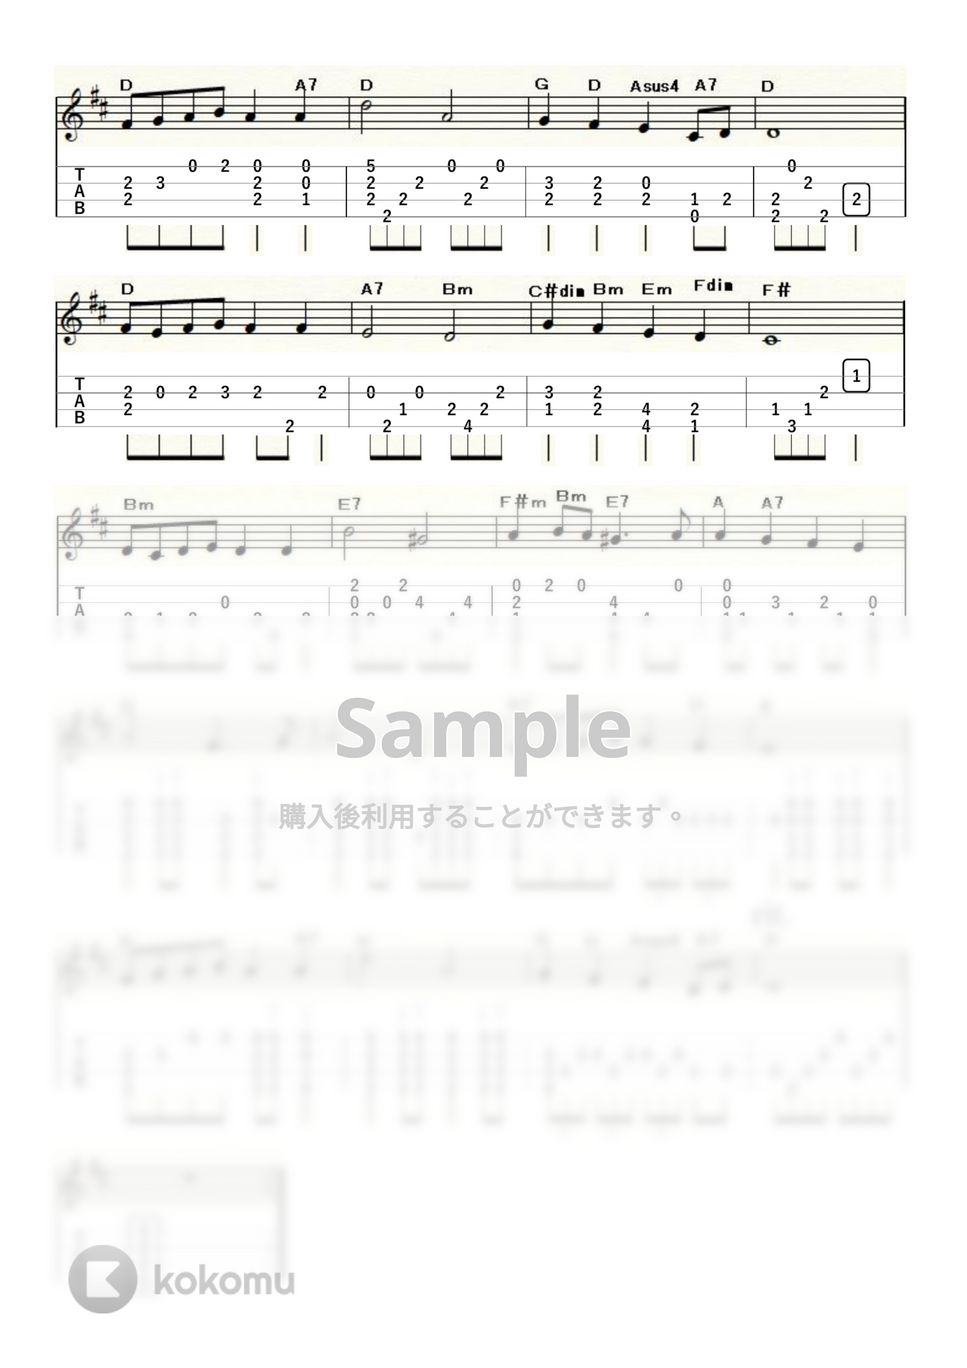 ヘンデル - 見よ勇者は帰る～表彰式の定番曲～ (ｳｸﾚﾚｿﾛ / Low-G / 中級) by ukulelepapa